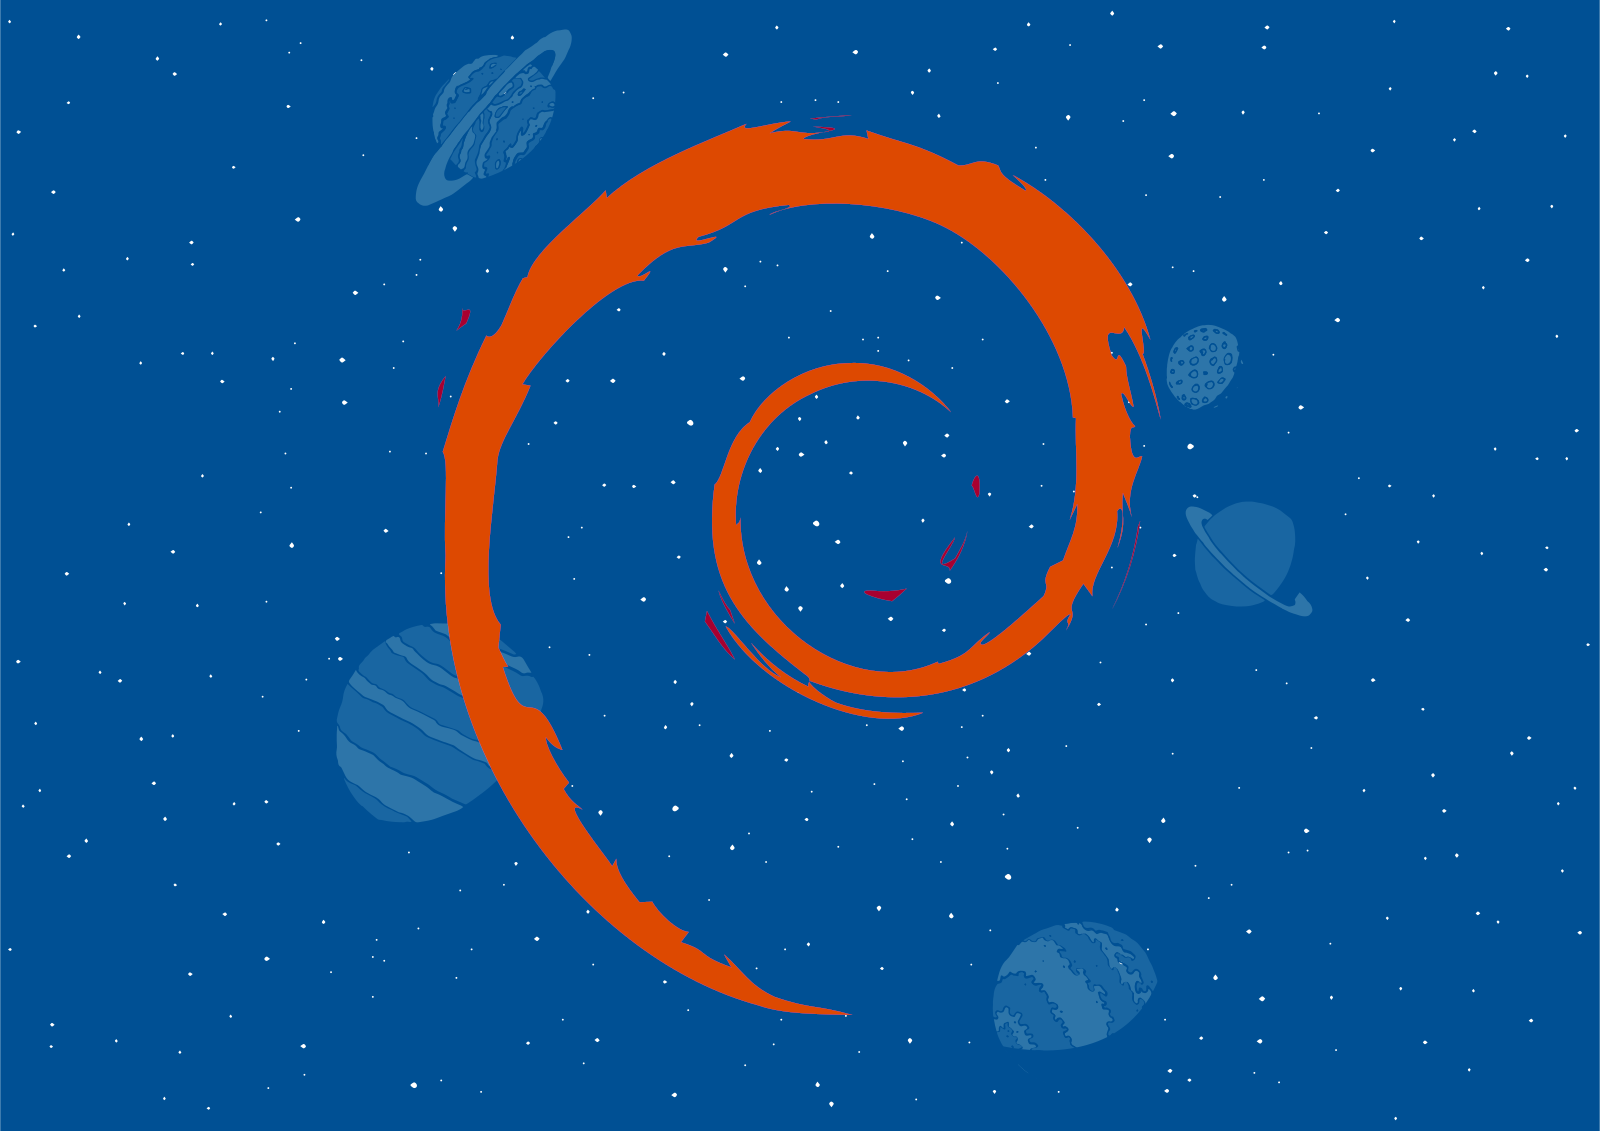 Das Debian-Logo schwebt in einem blauen Weltall.